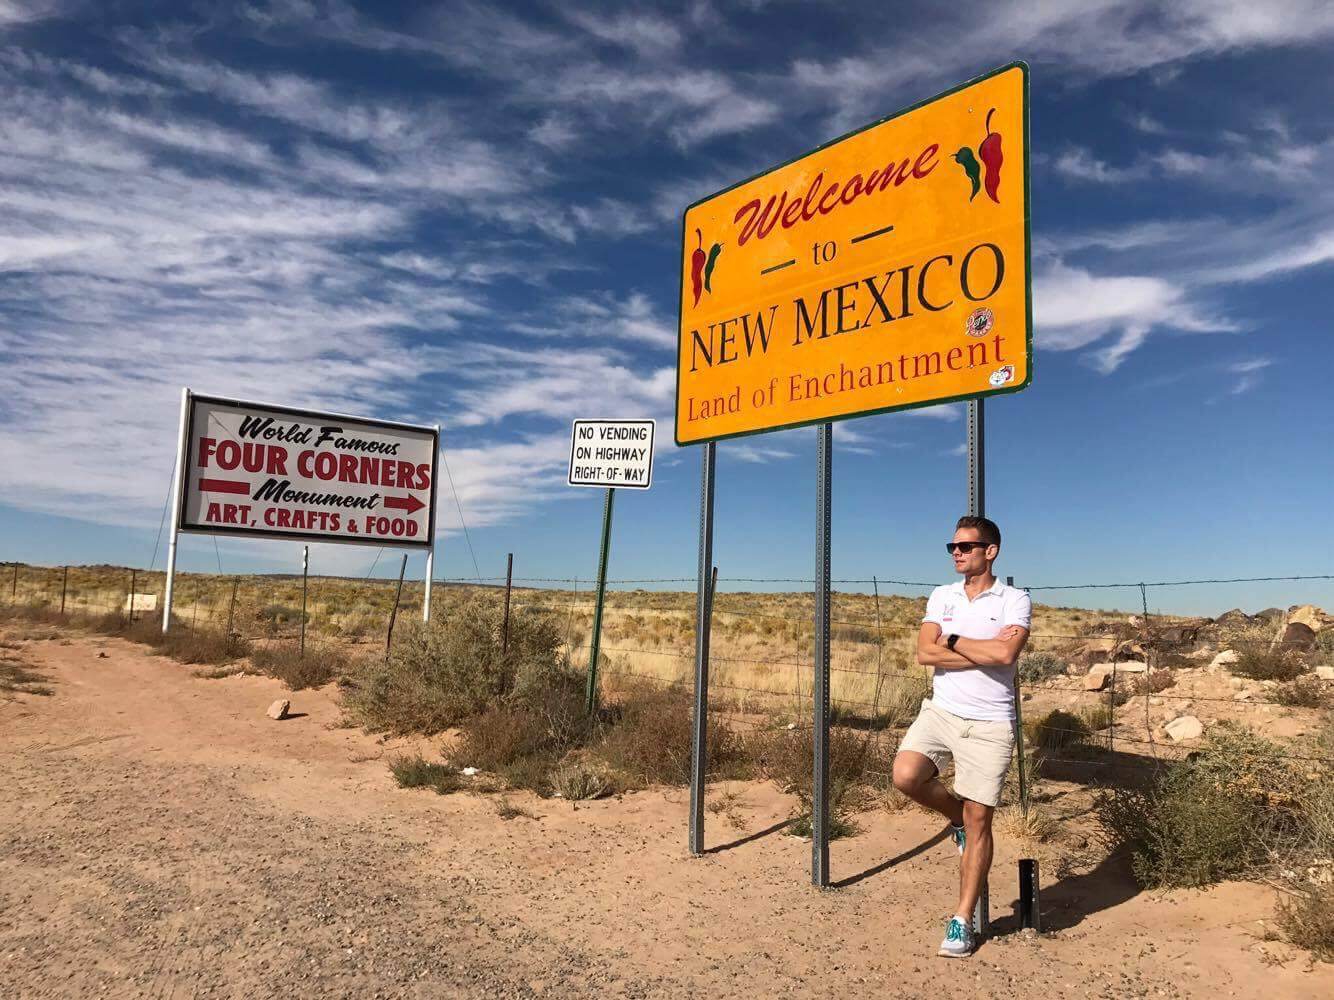 Four Corners New Mexico, USA